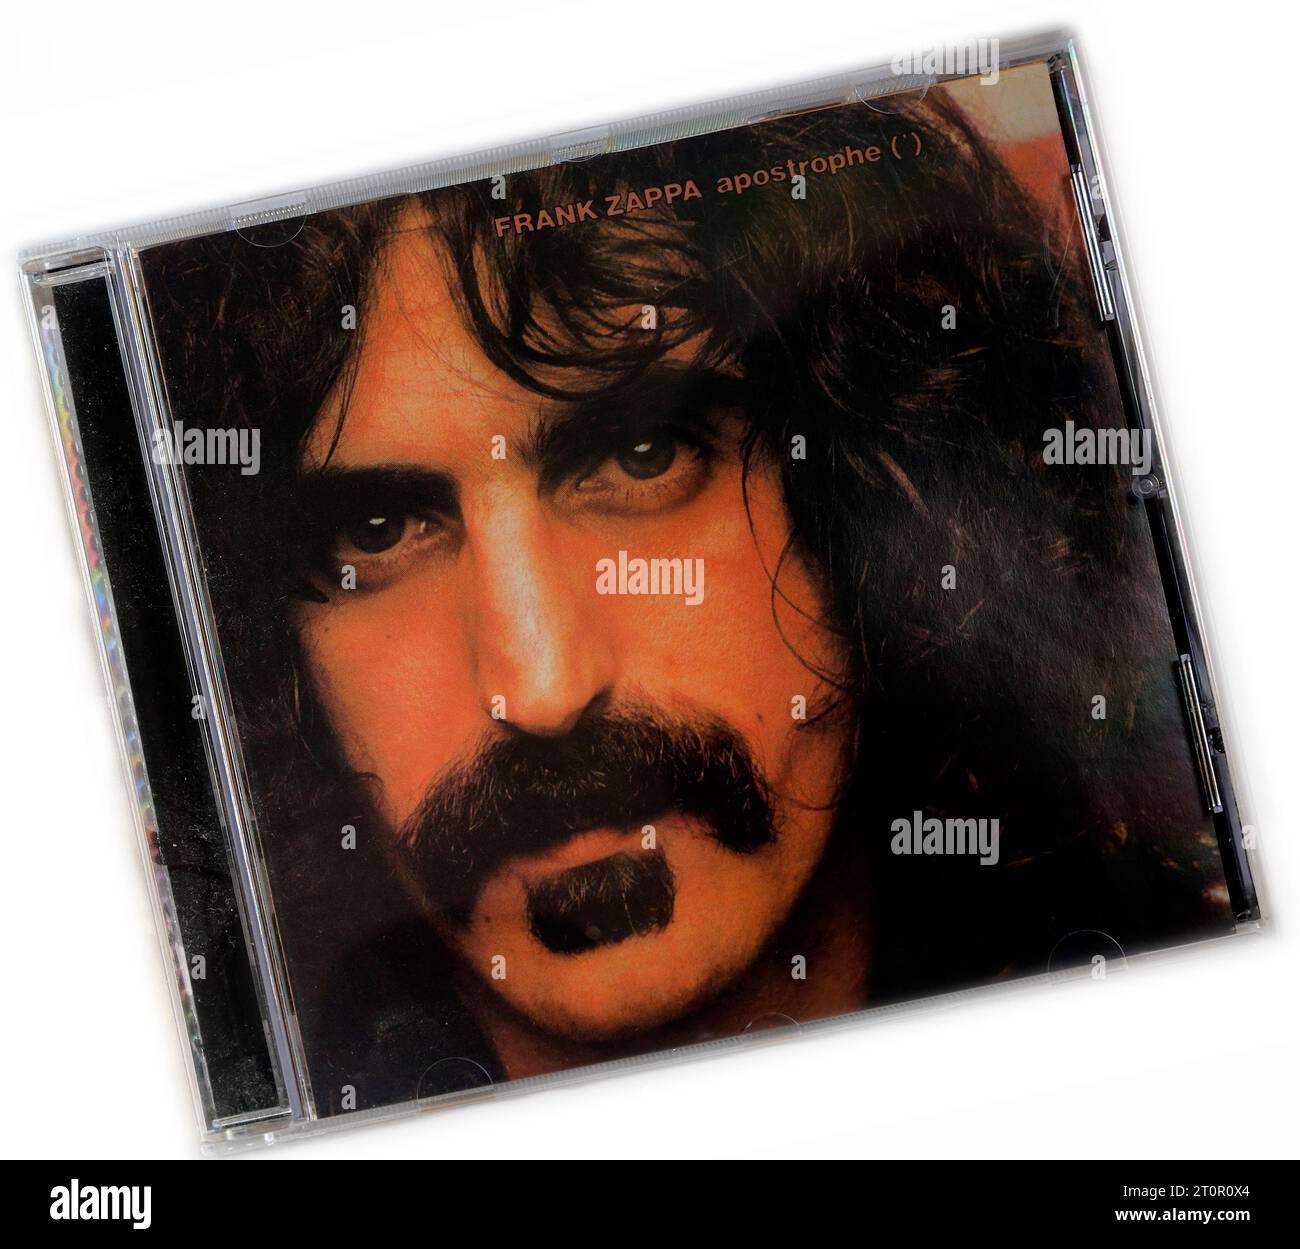 Frank Zappa - Apostrophe - étui CD d'occasion sur fond clair Banque D'Images